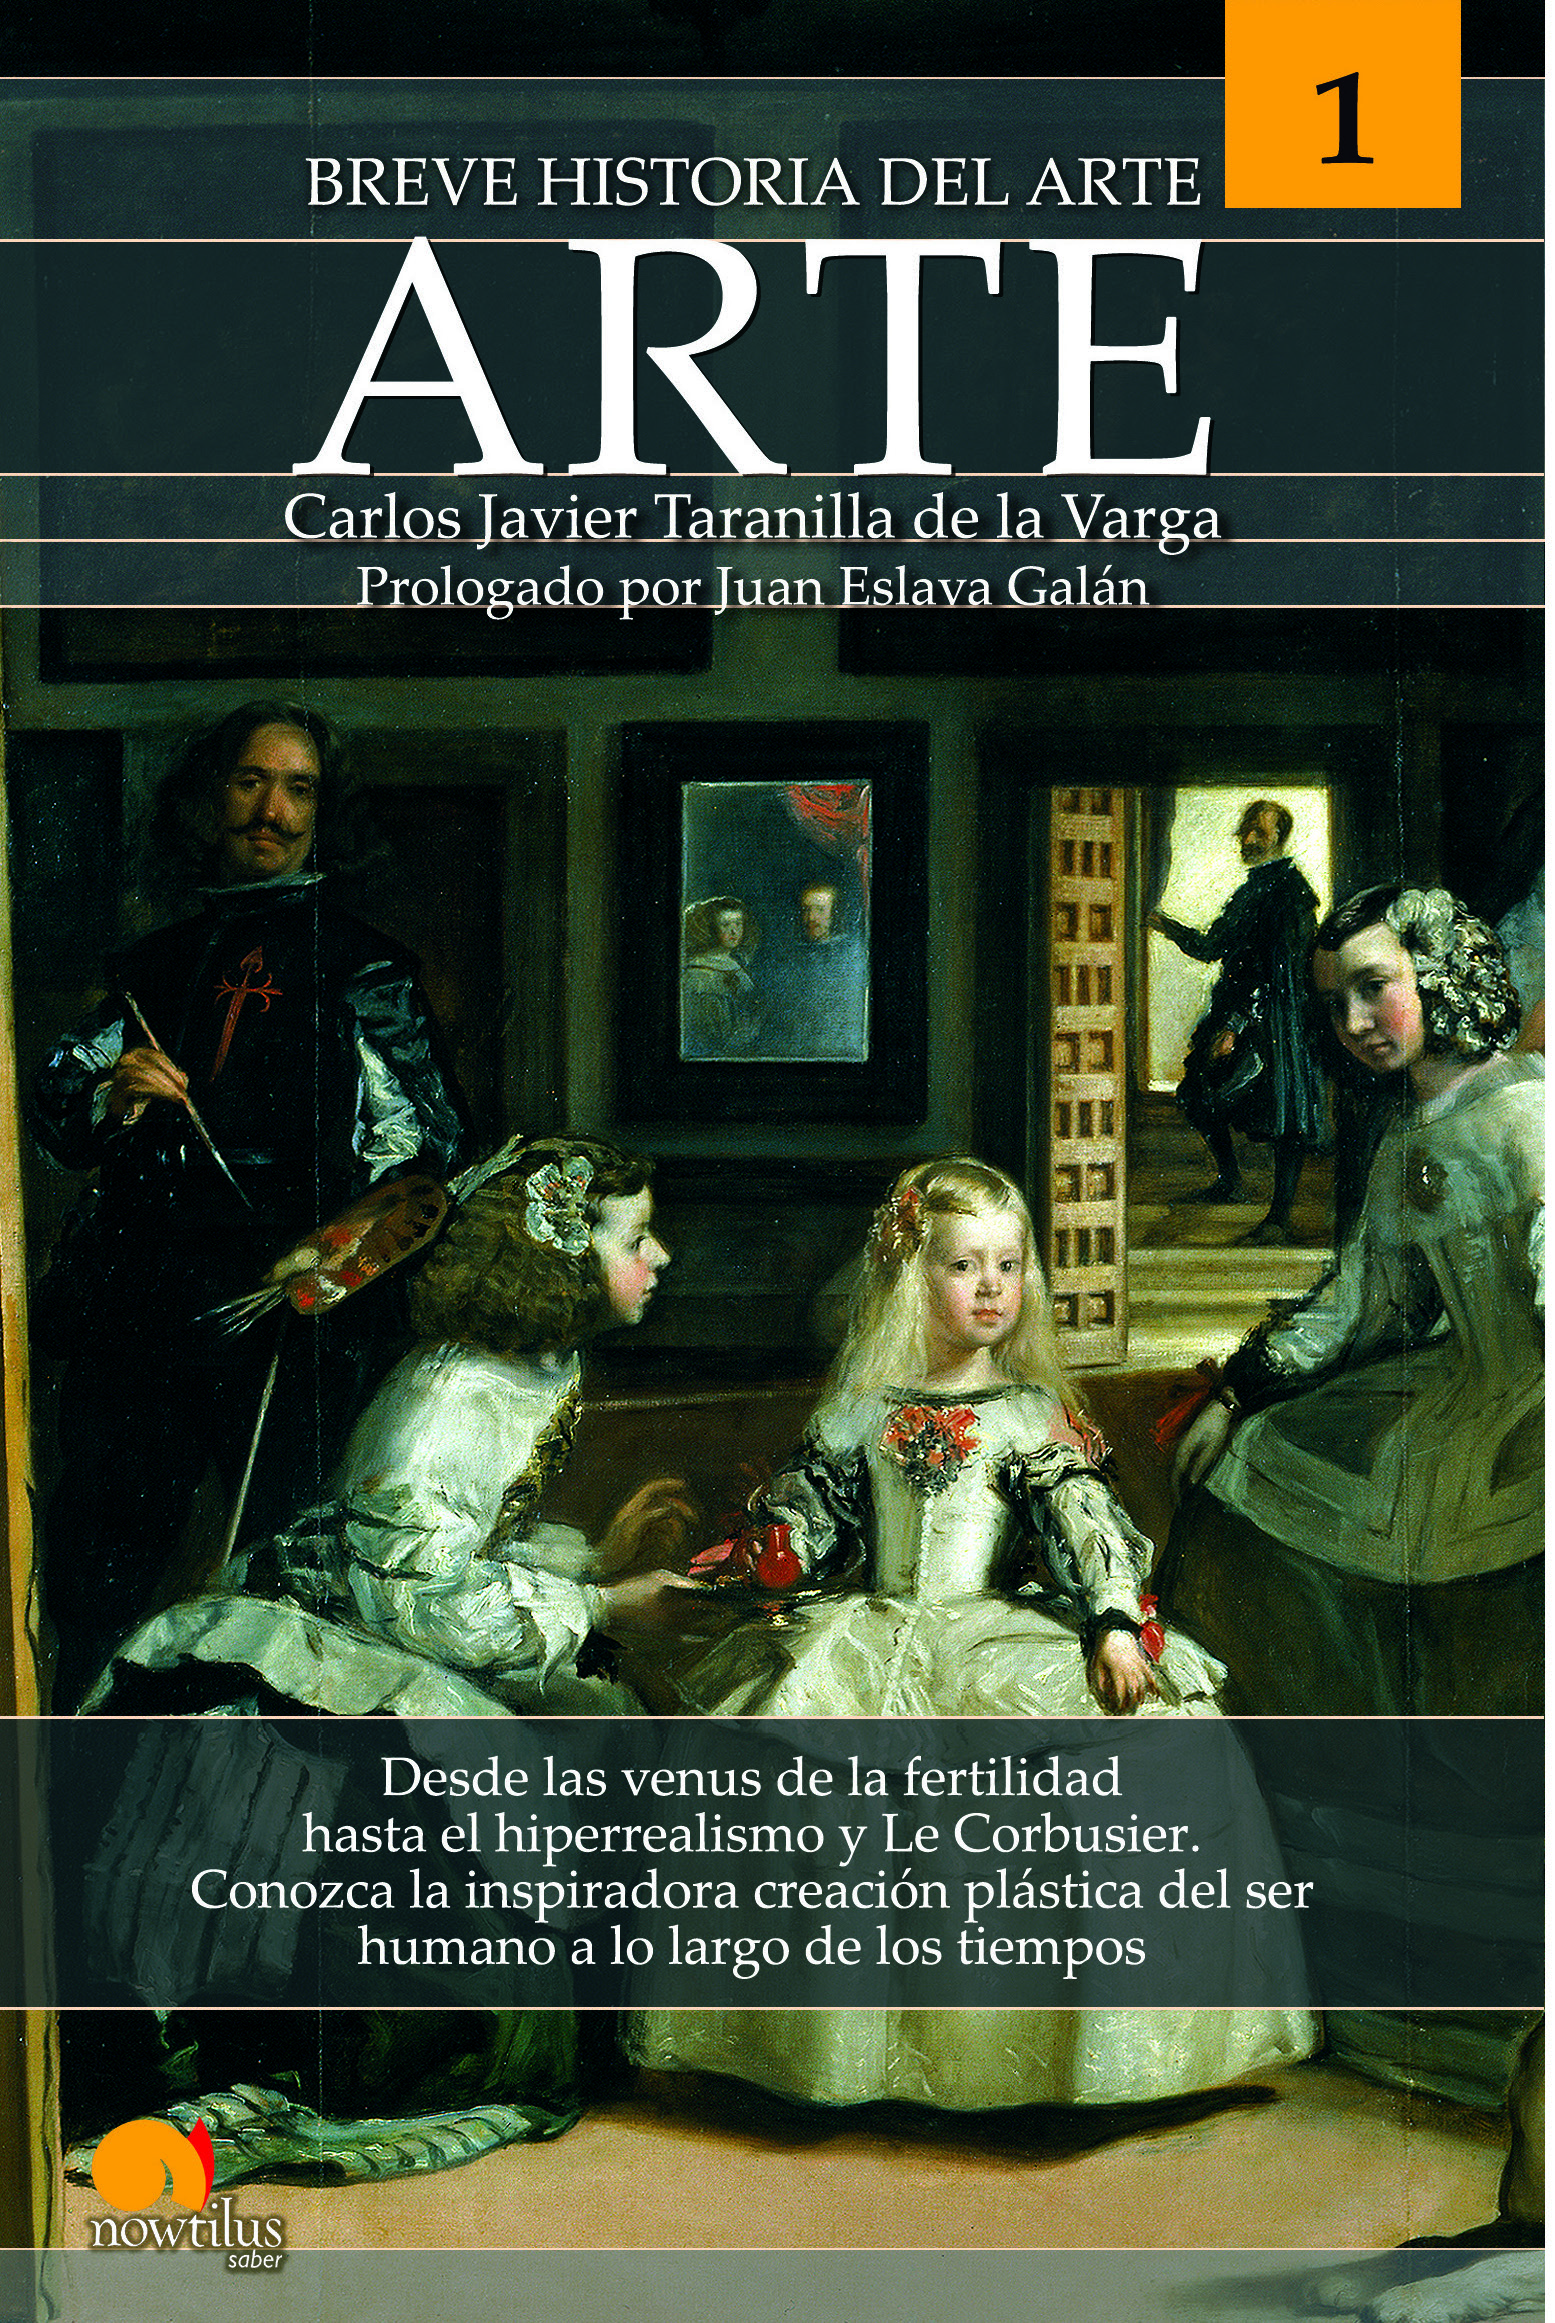 Breve historia del arte nueva edición (9788413052076)